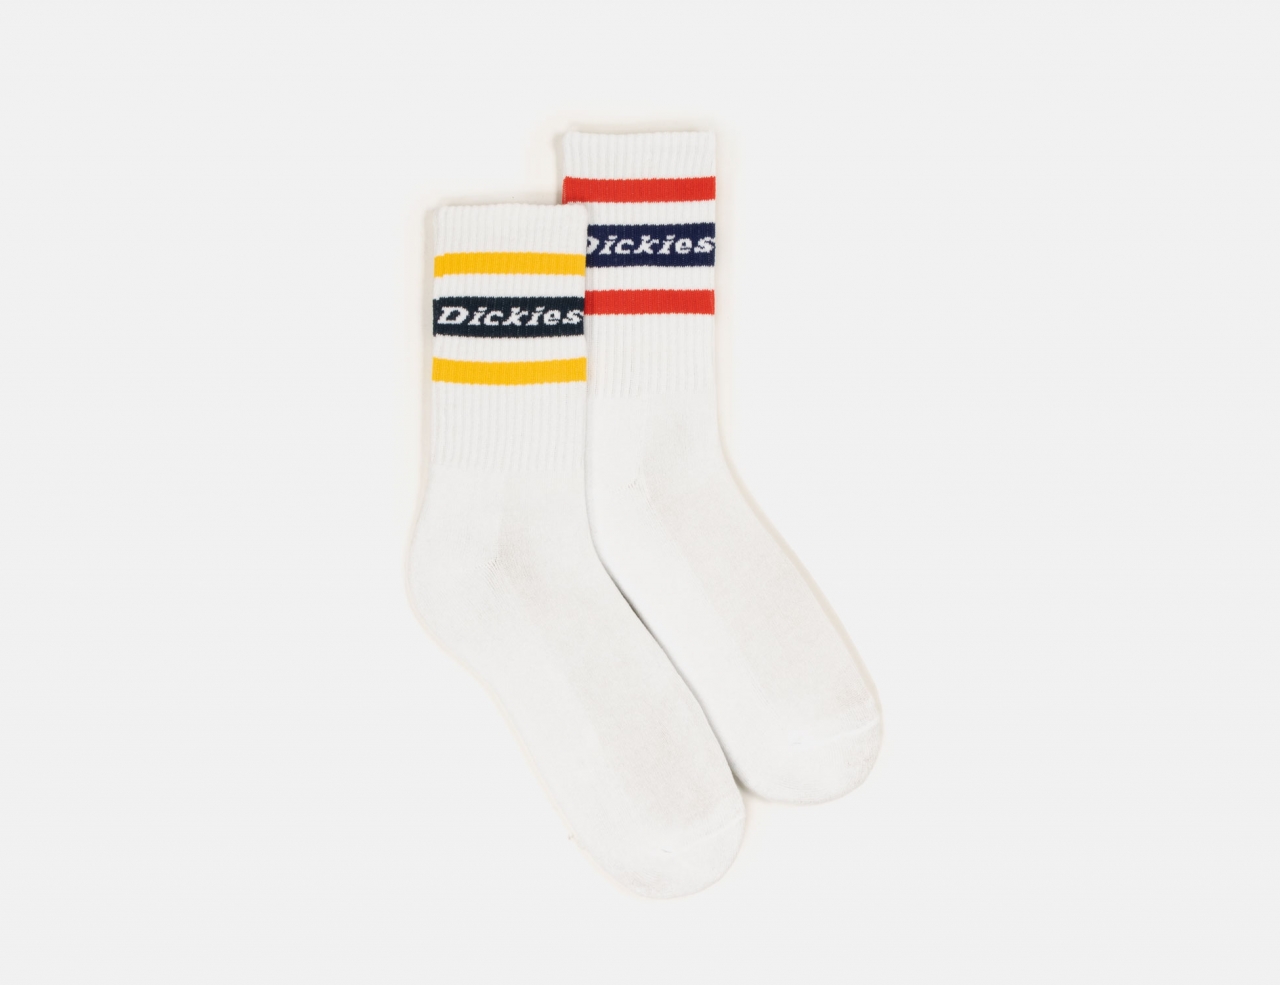 Dickies Seatac Socks - Golden Ochre